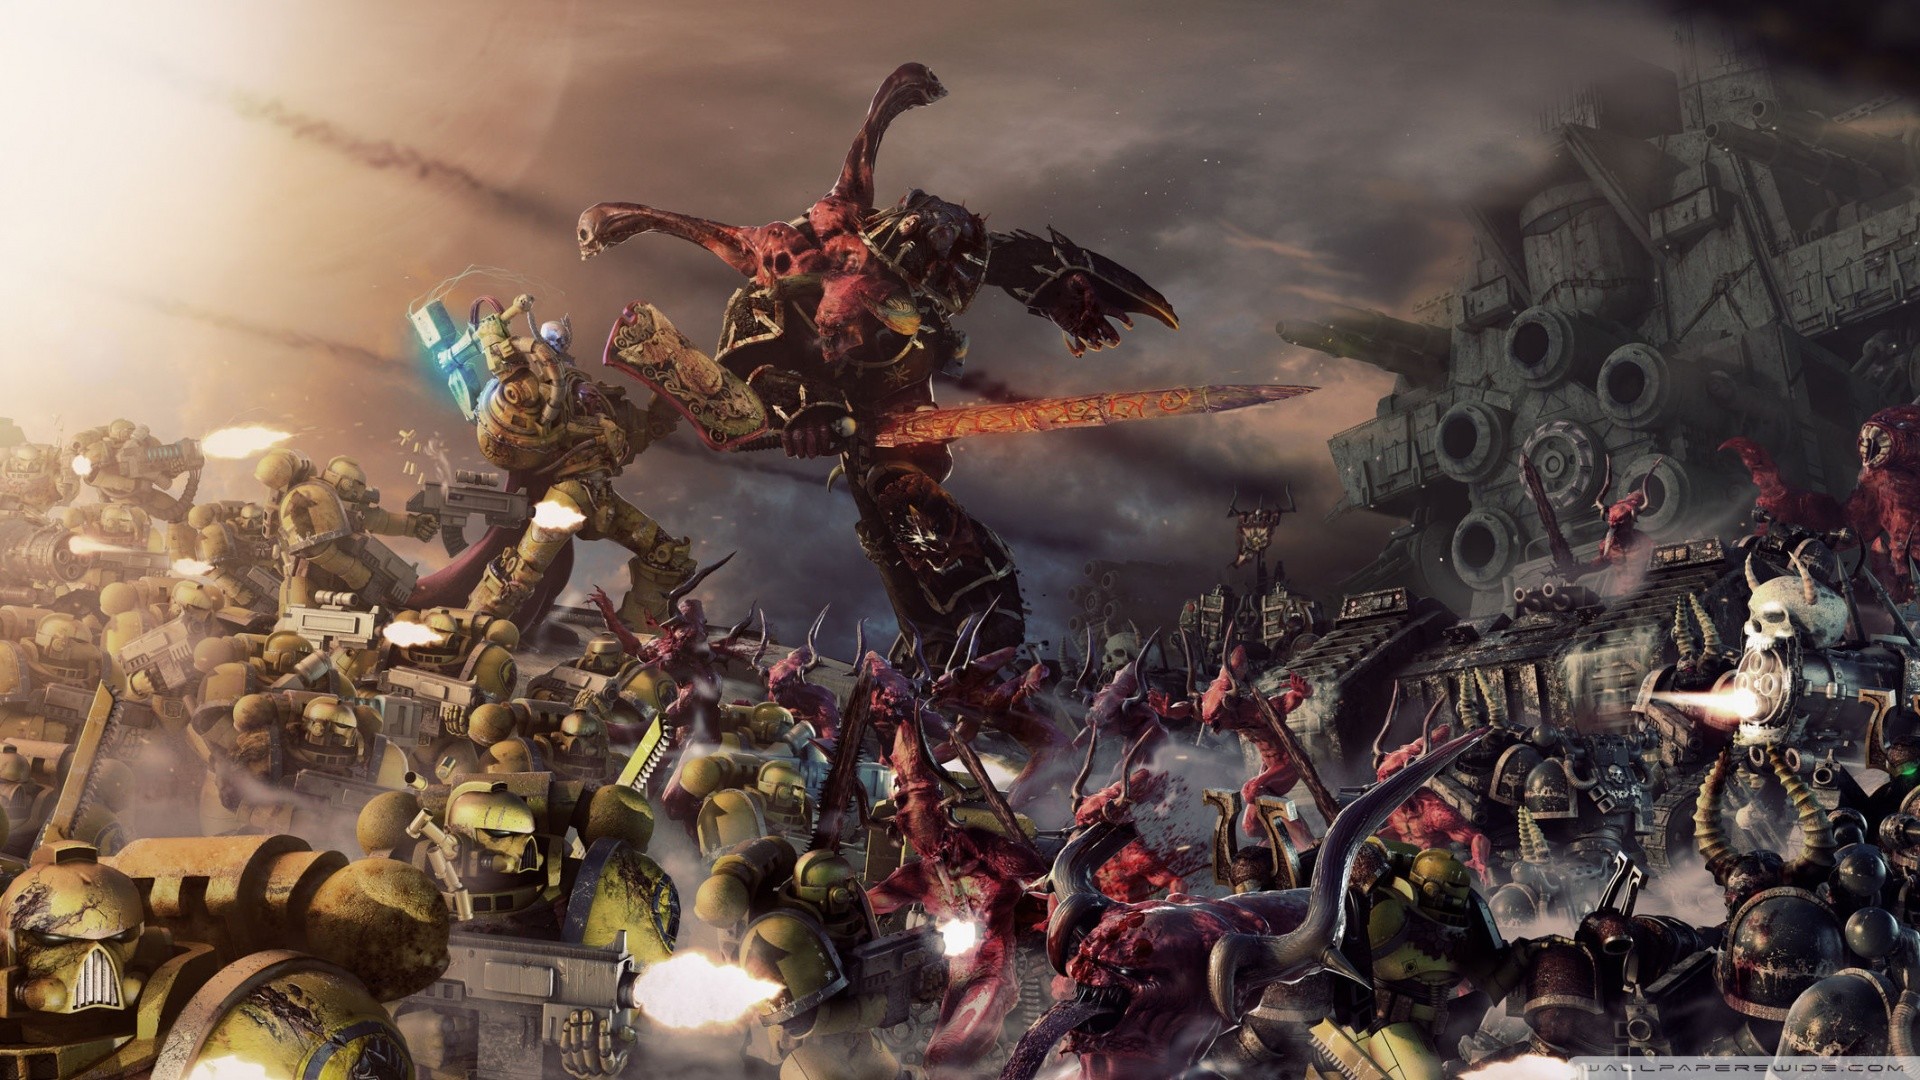 Hd - Warhammer 40k Titan - HD Wallpaper 